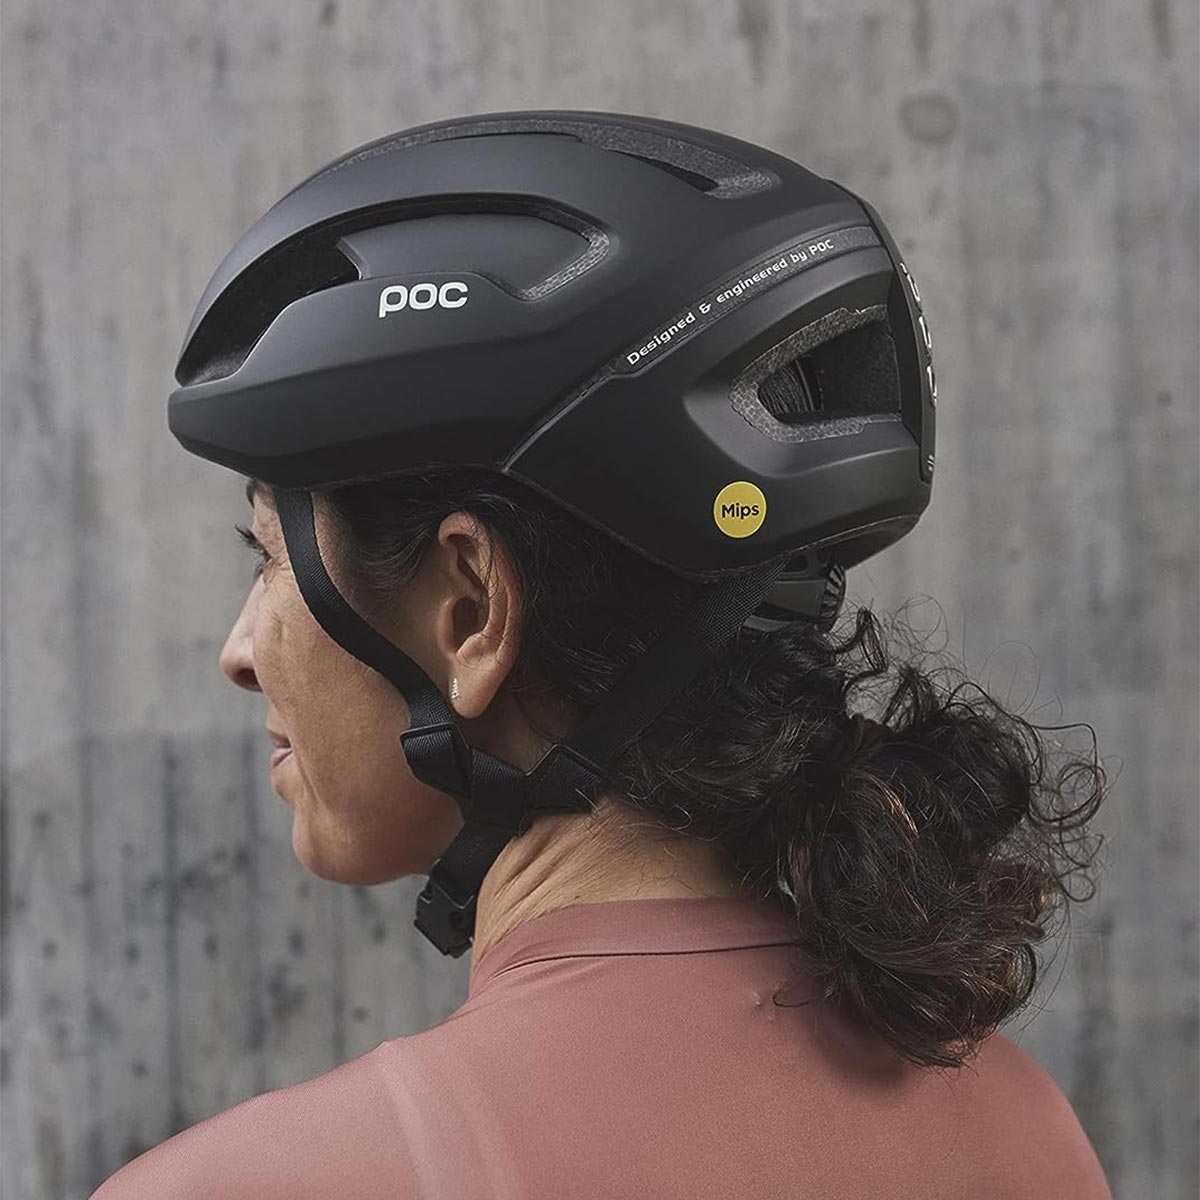 Cazando ofertas: el POC Omne Air MIPS, un casco polivalente para MTB y carretera, a mitad de precio en Amazon